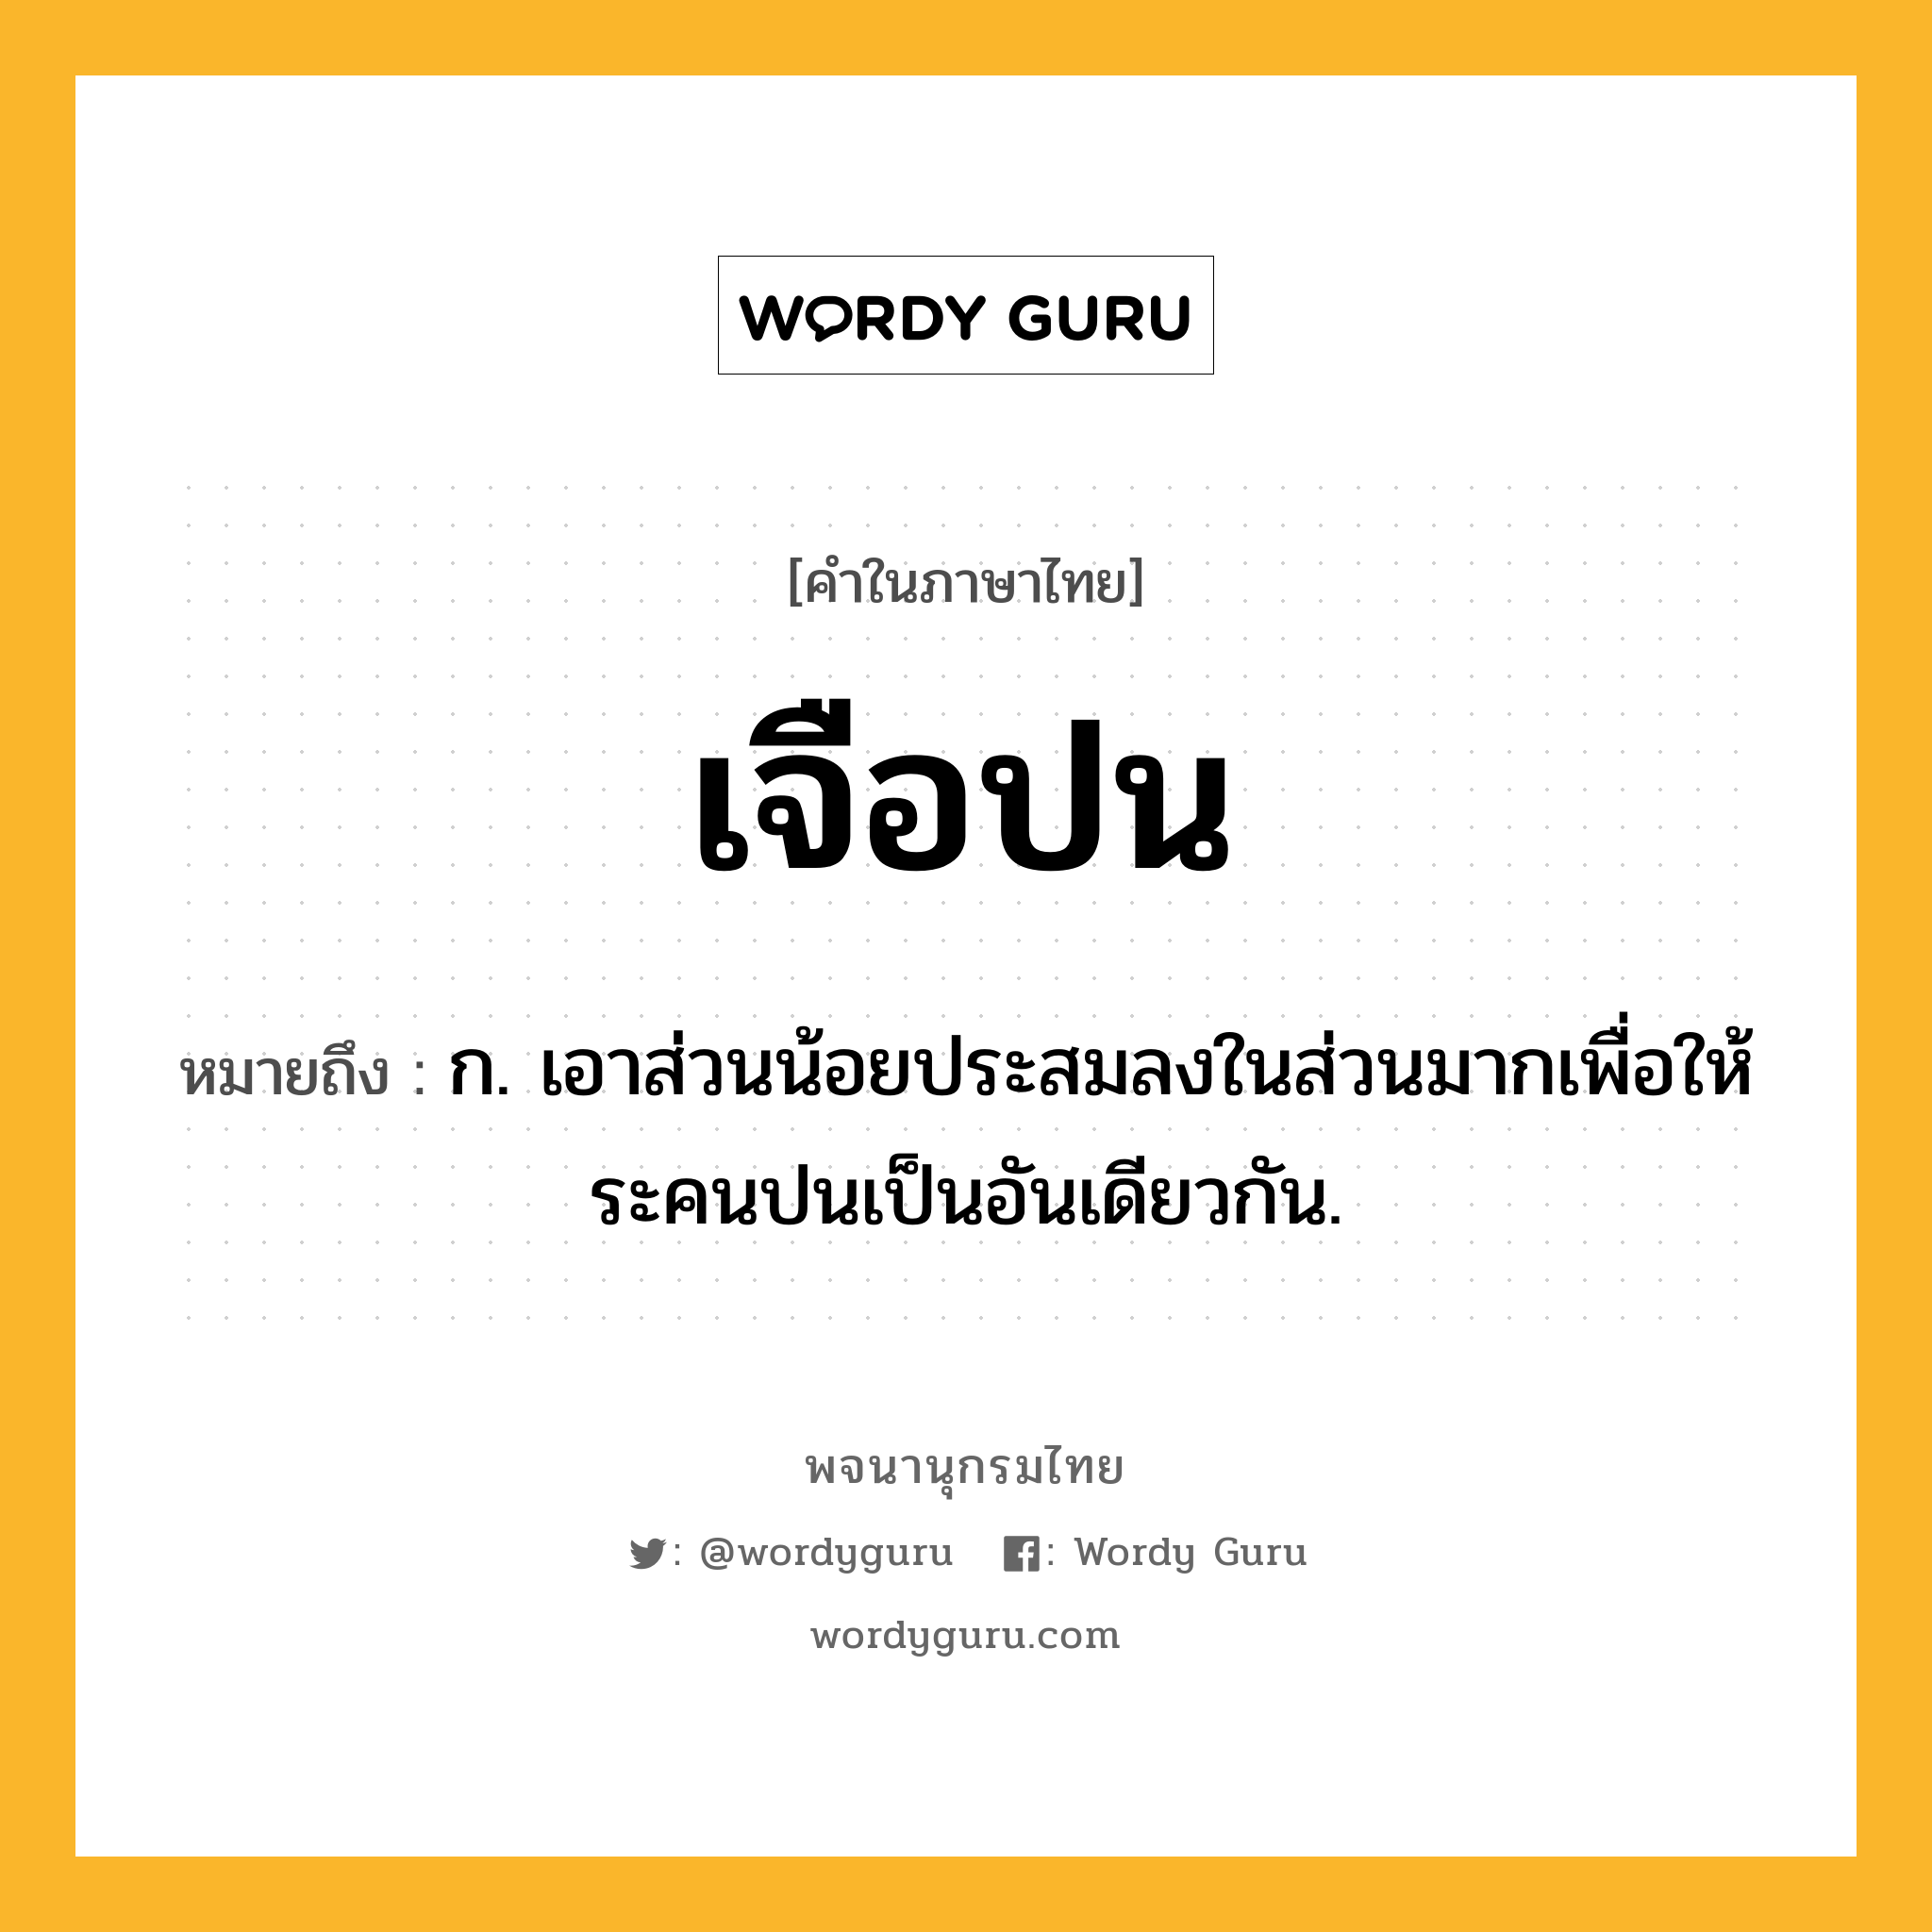 เจือปน ความหมาย หมายถึงอะไร?, คำในภาษาไทย เจือปน หมายถึง ก. เอาส่วนน้อยประสมลงในส่วนมากเพื่อให้ระคนปนเป็นอันเดียวกัน.